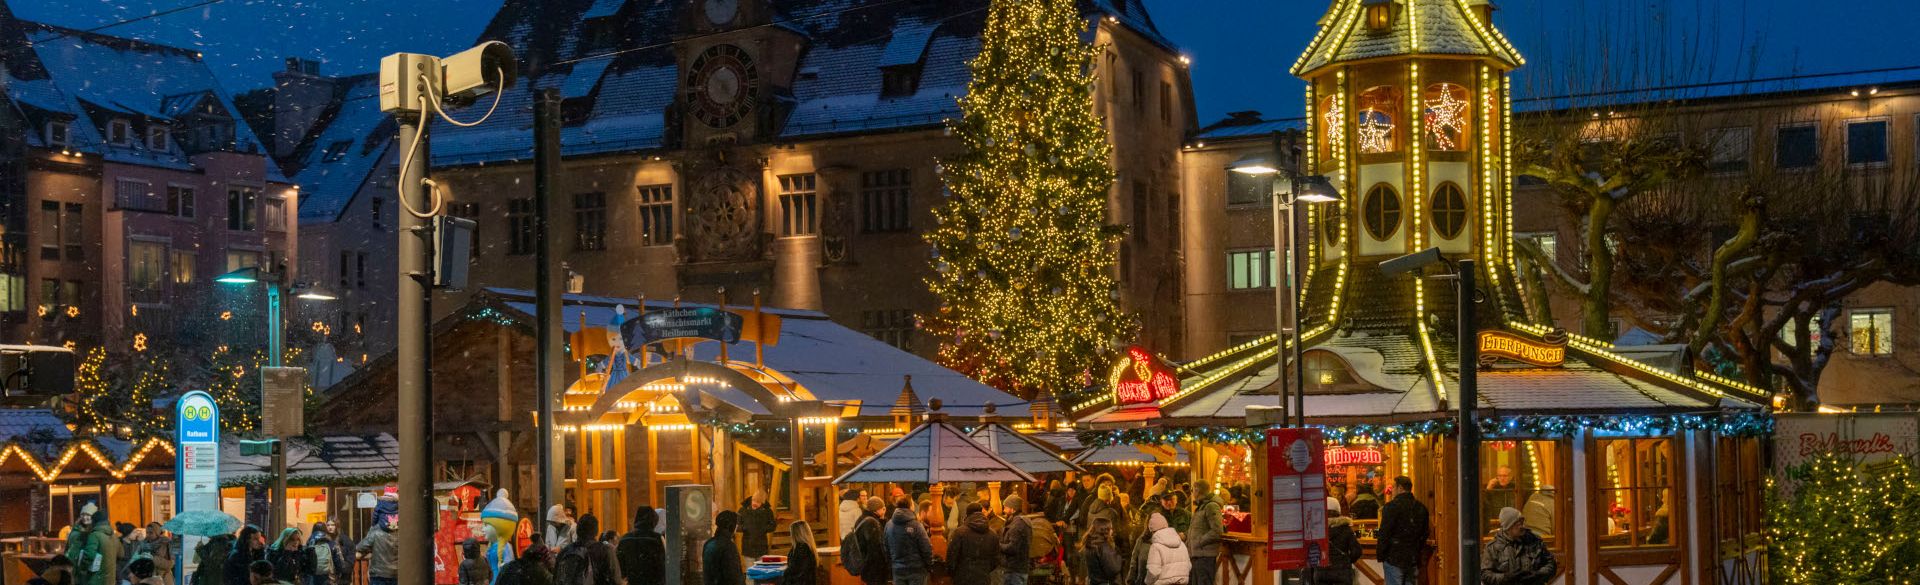 Heilbronner Käthchen Weihnachtsmarkt